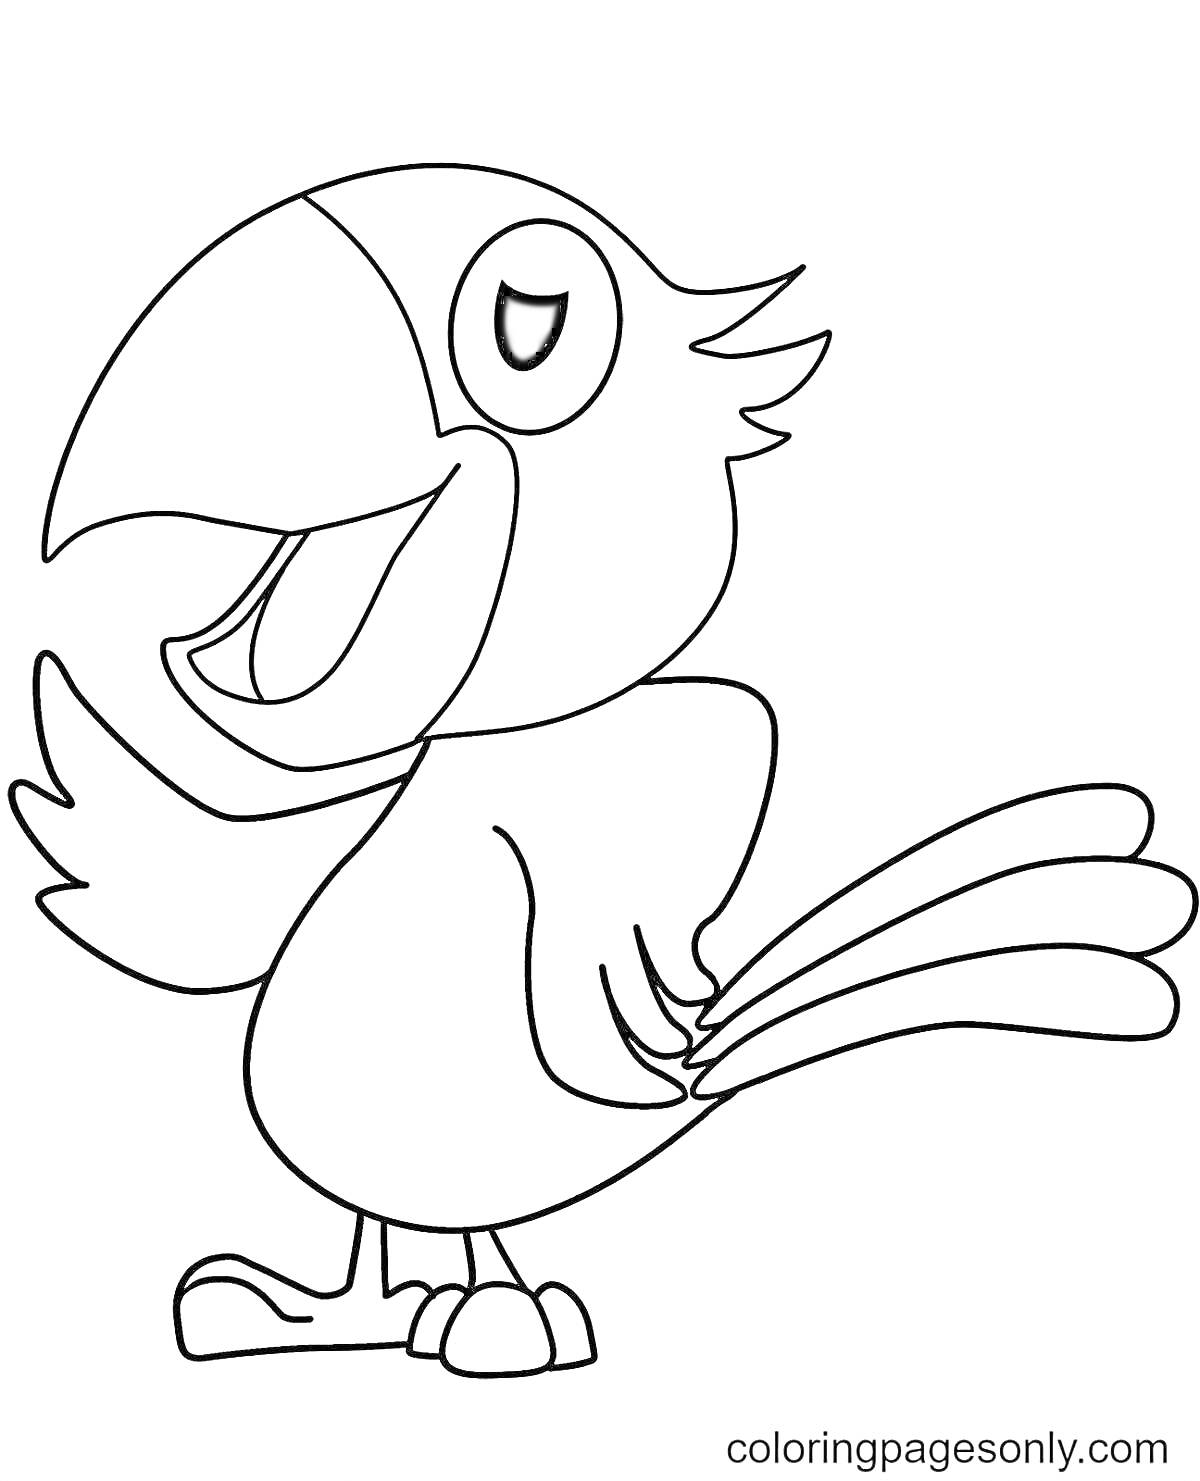 Раскраска Попугай, стоящий на одной лапке с открытым клювом и приподнятым крылом. Черно-белая раскраска.